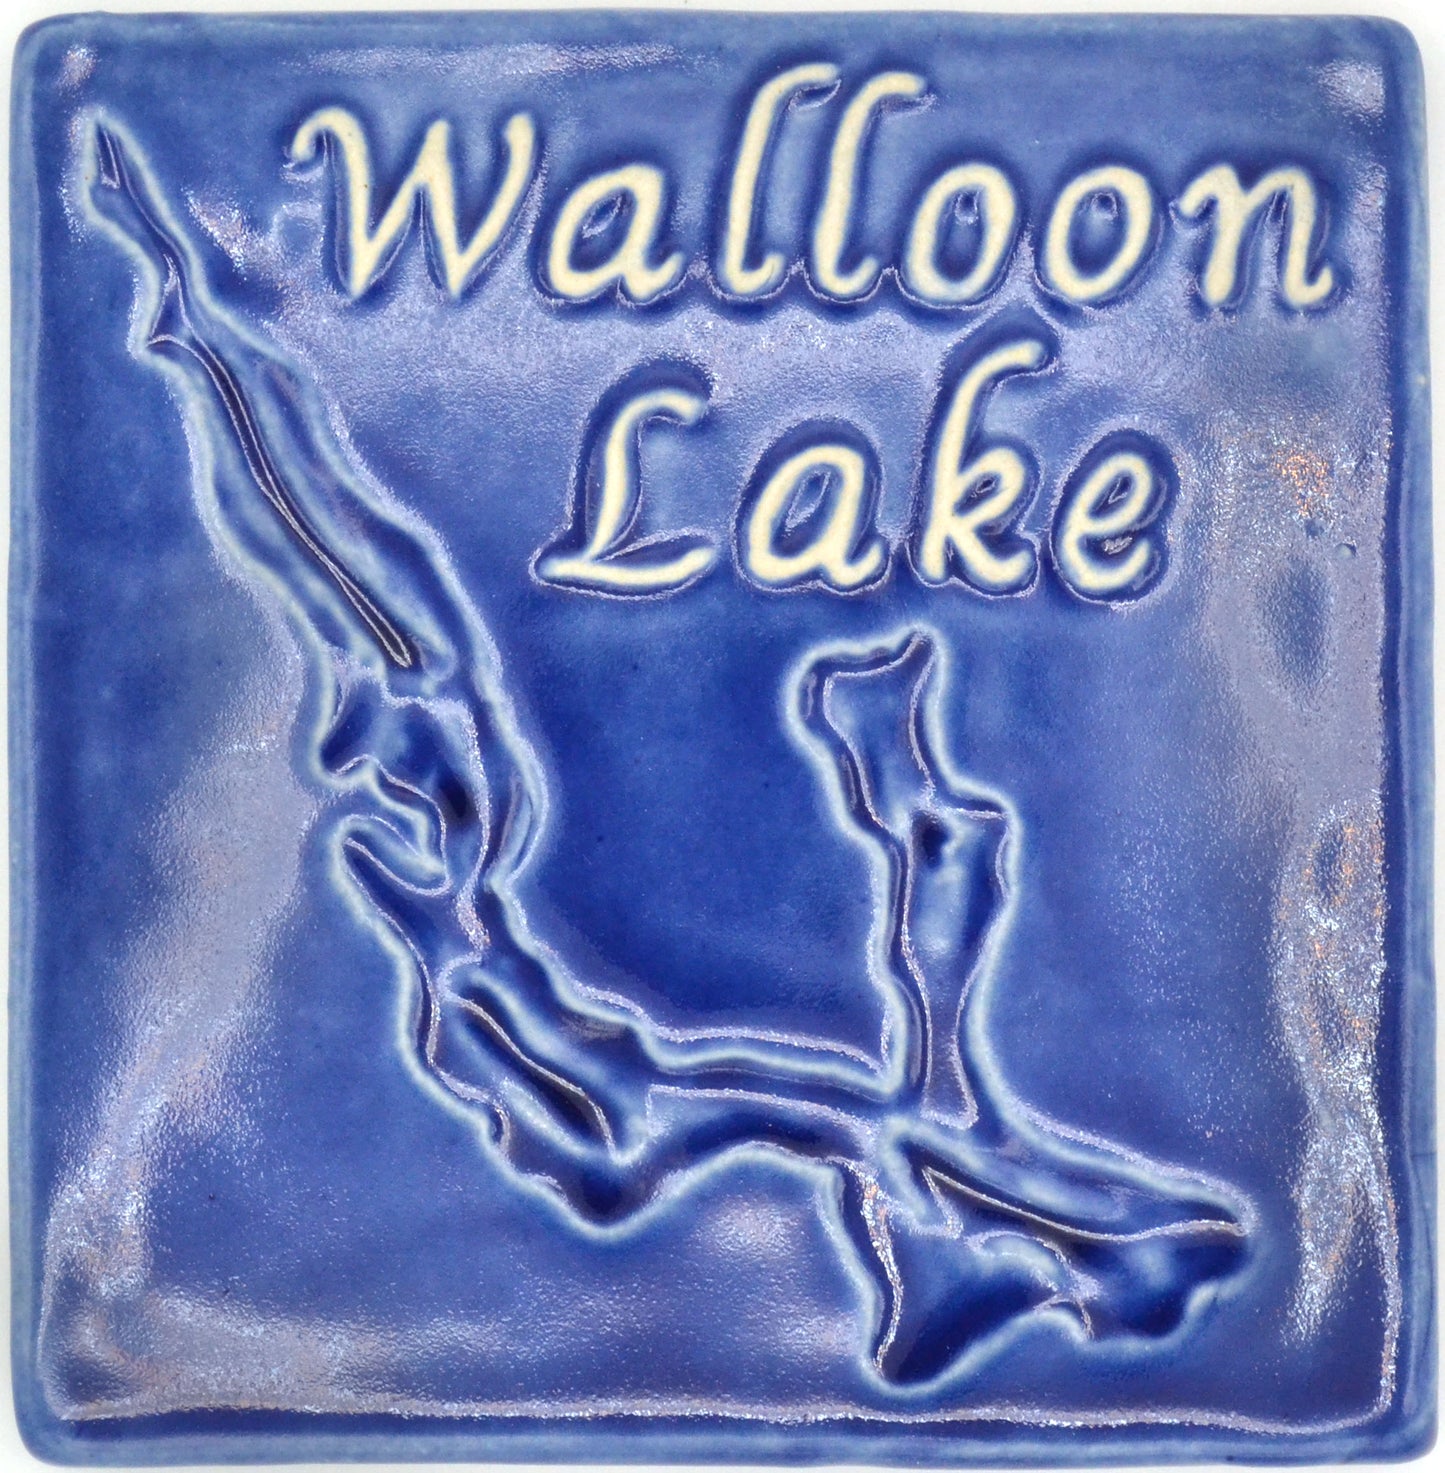 6x6 walloon lake tile blue